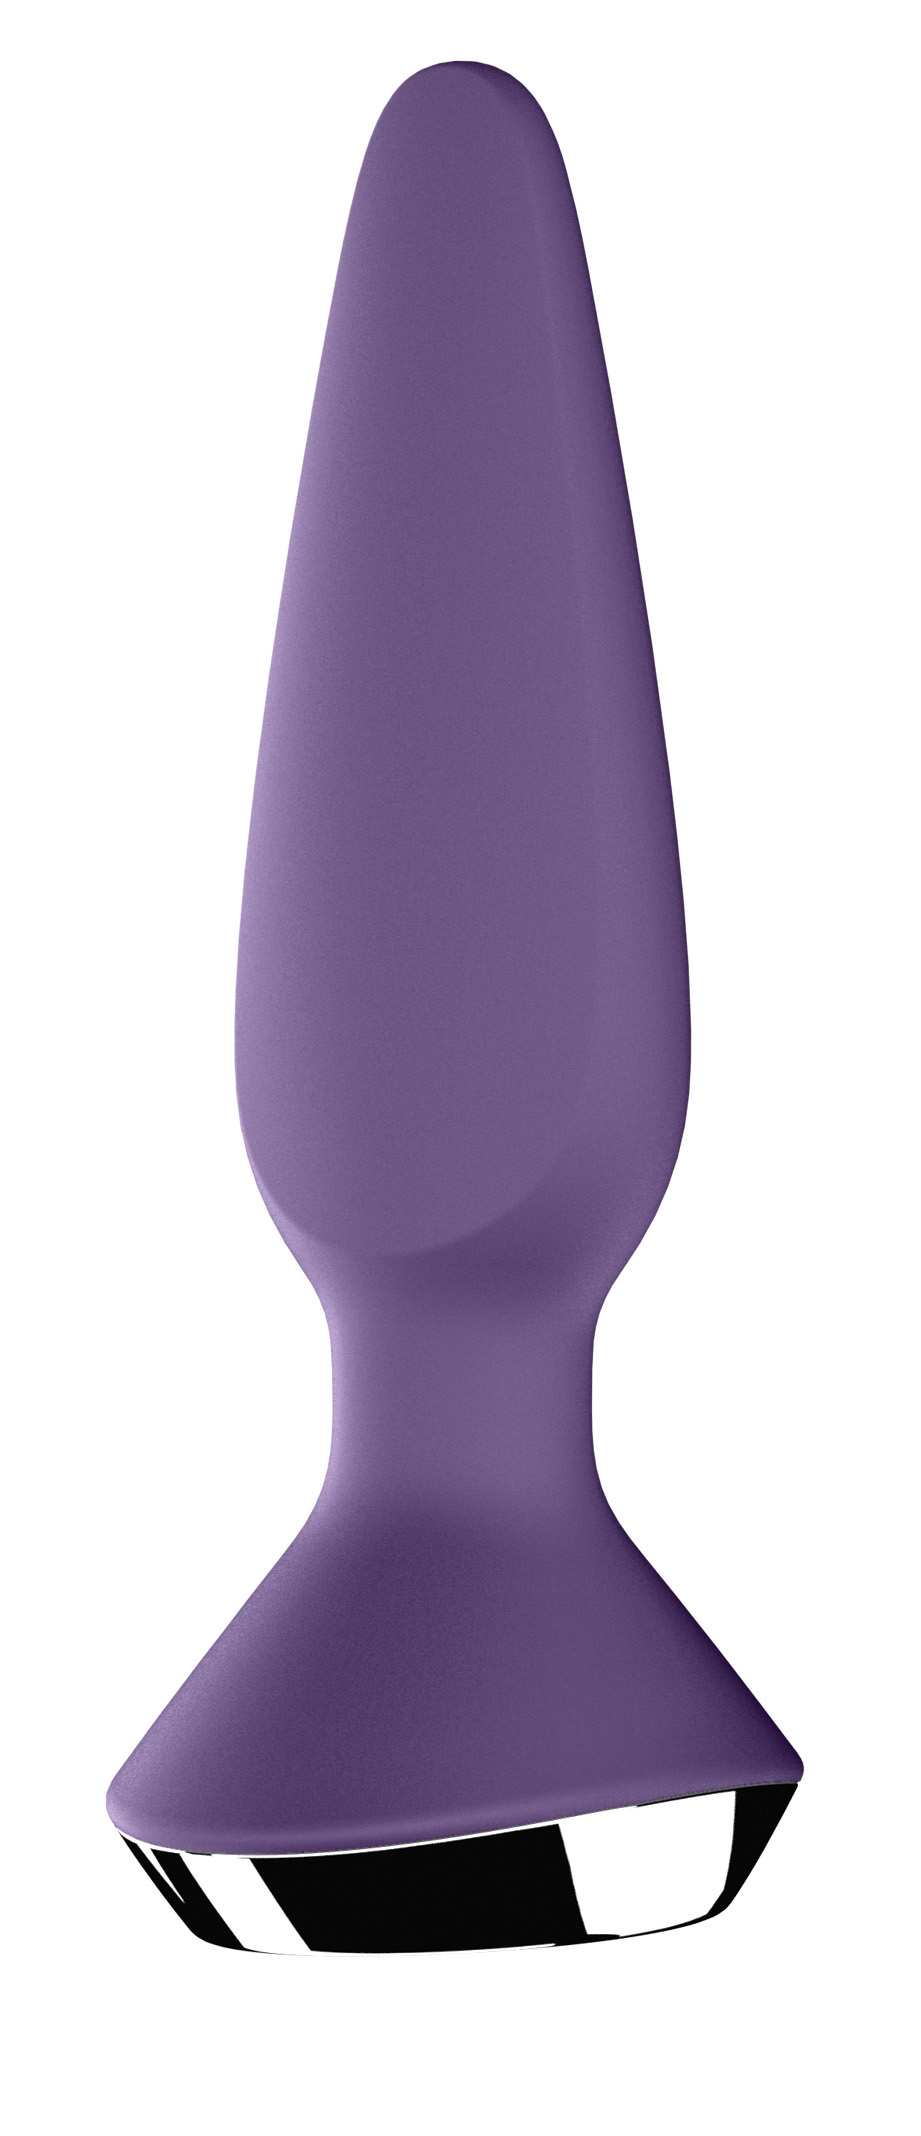 SATISFYER Plug-ilicious 1 purple